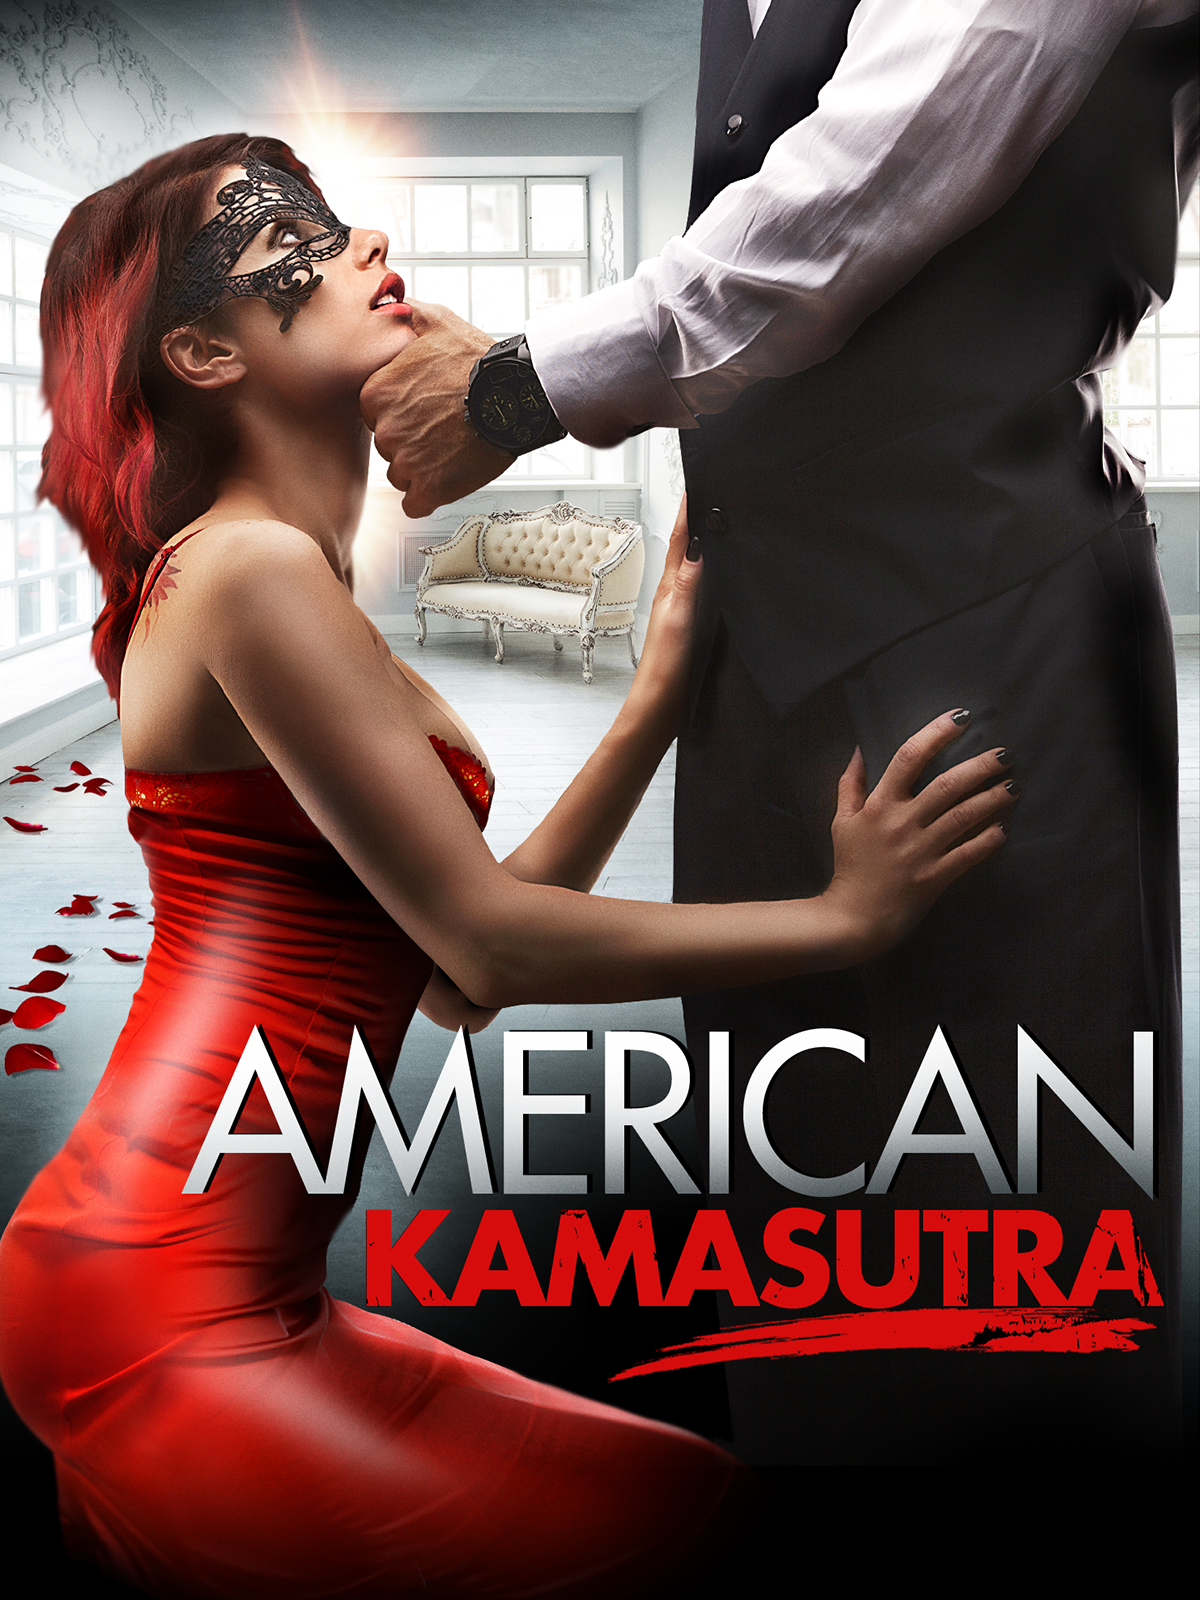 ดูหนังออนไลน์ฟรี American Kamasutra (2018) อเมริกัน กามสูตร